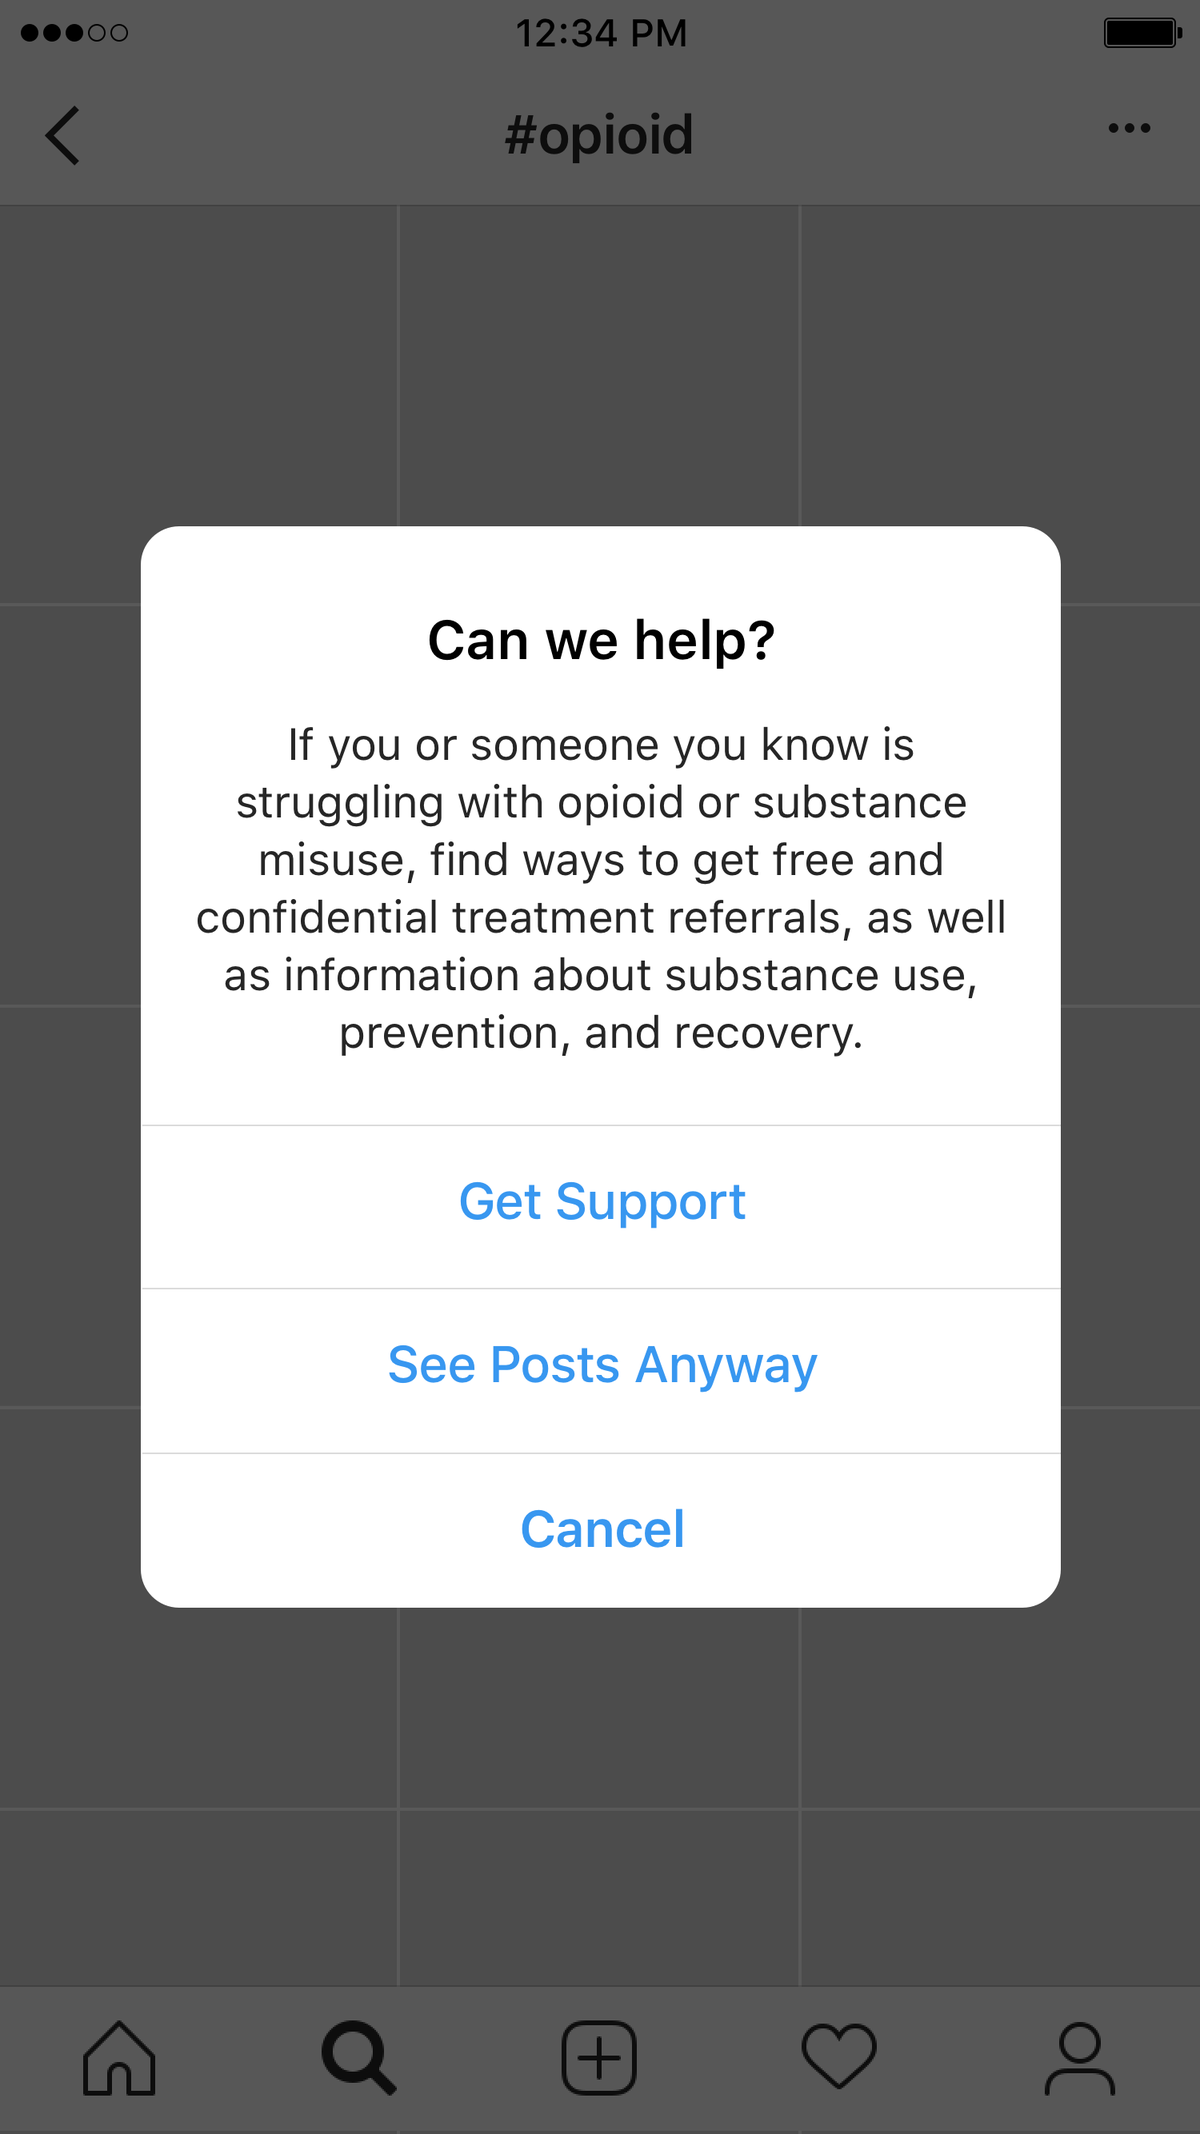 Instagram mostrará una ventana emergente de 'Obtener soporte' cuando los usuarios busquen hashtags relacionados con opioides